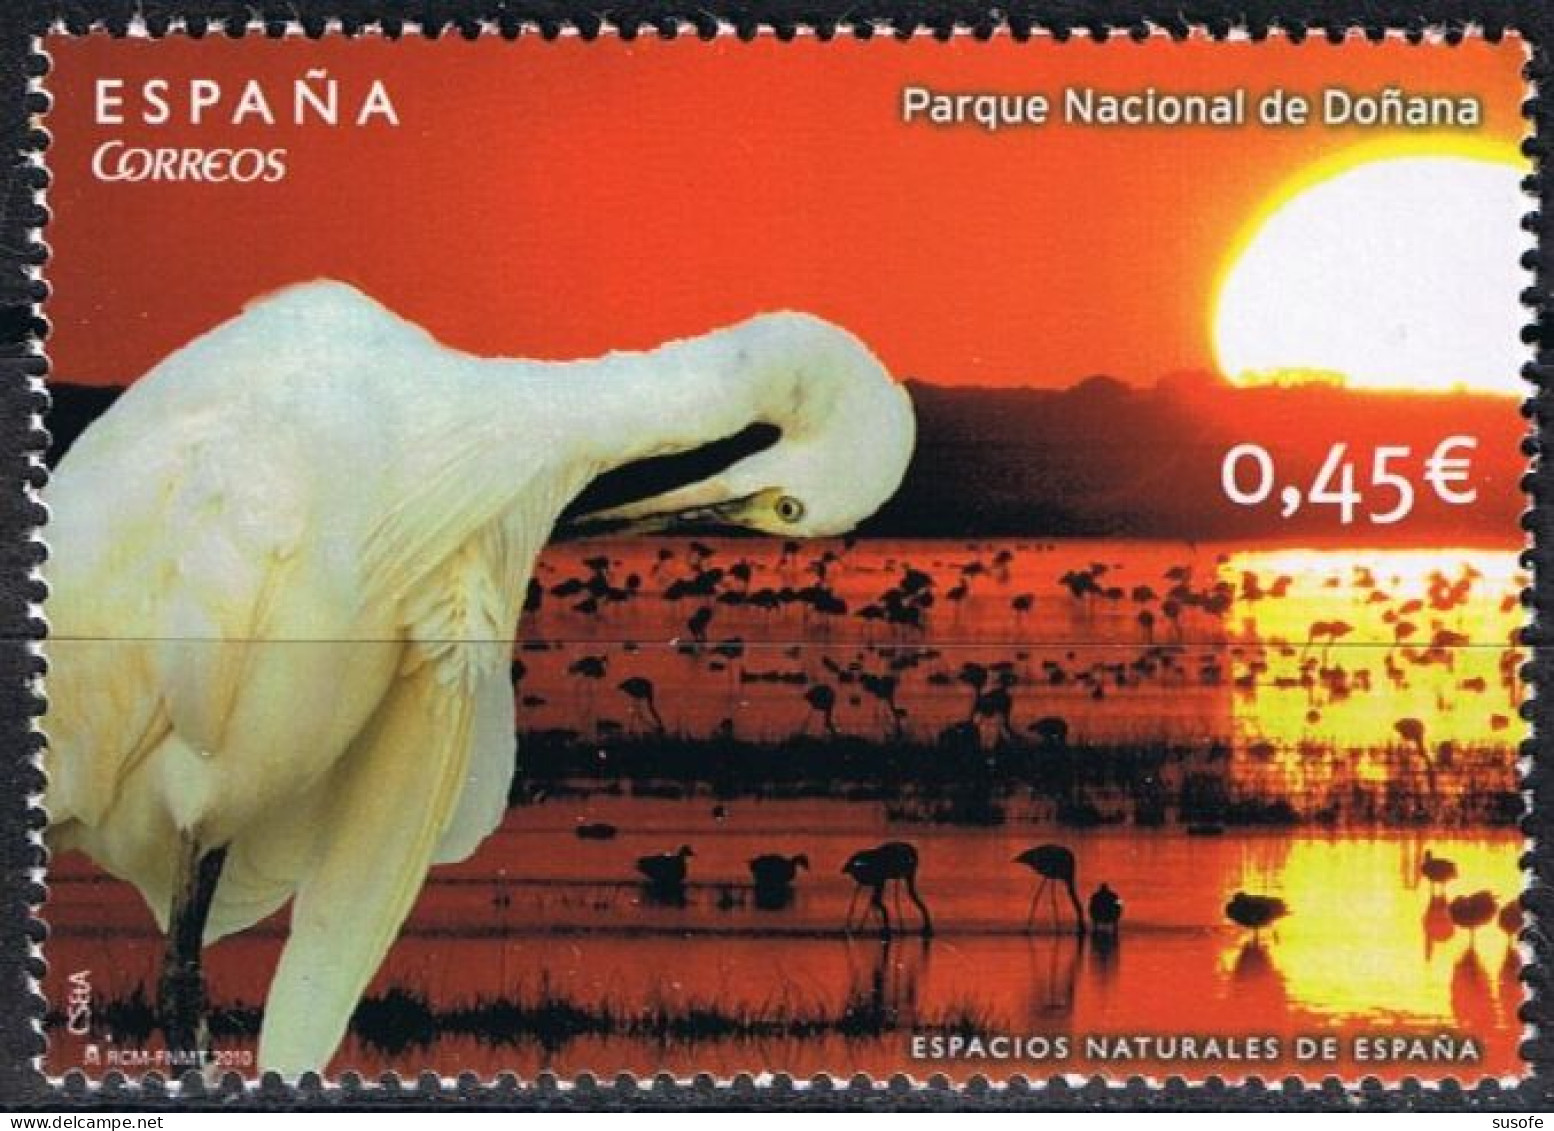 España 2010 Edifil 4568 Sello ** Espacios Naturales Parque Nacional De Doñana Huelva Garza (Ardea Alba) Patrimonio Mundi - Ungebraucht